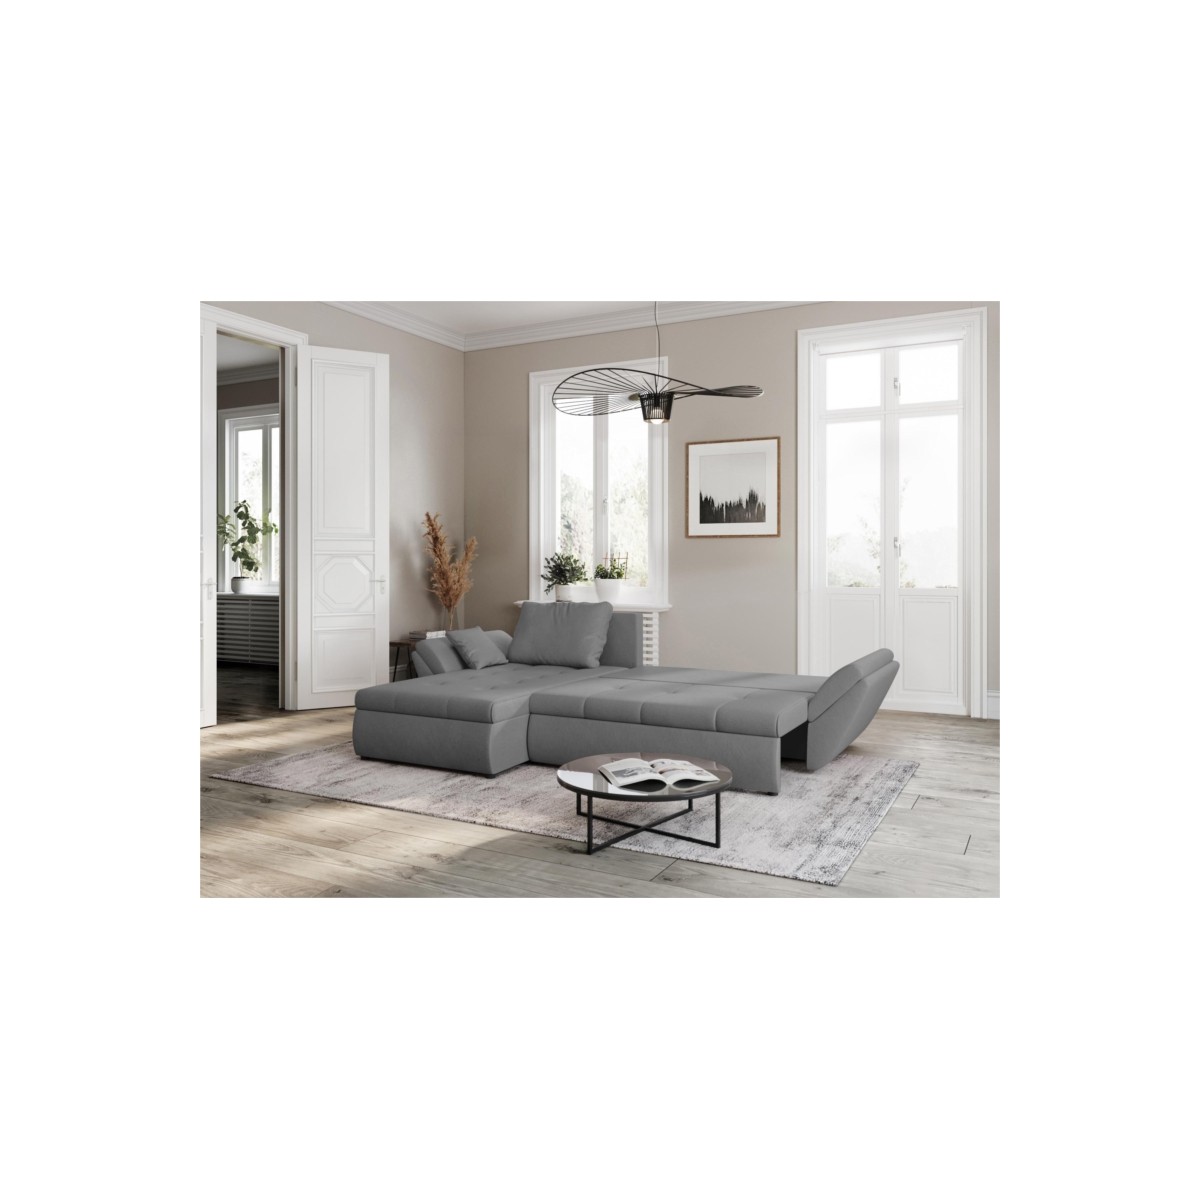 Moderno - Fundas para sofá convertible, sofá cama y BZ - La Casa